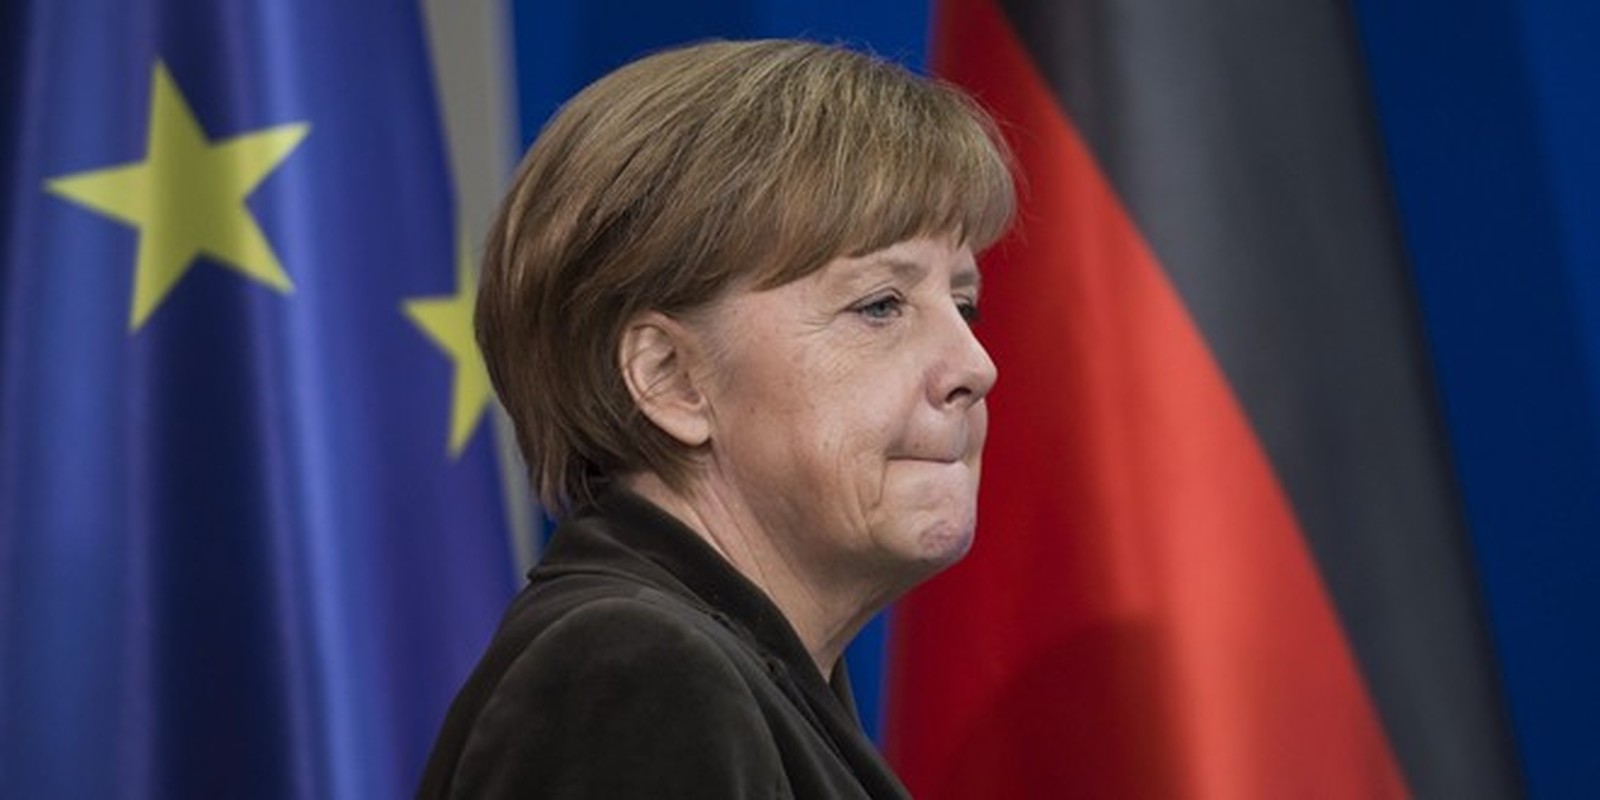 Cuoc doi cua nguoi dan ba thep Angela Merkel-Hinh-12